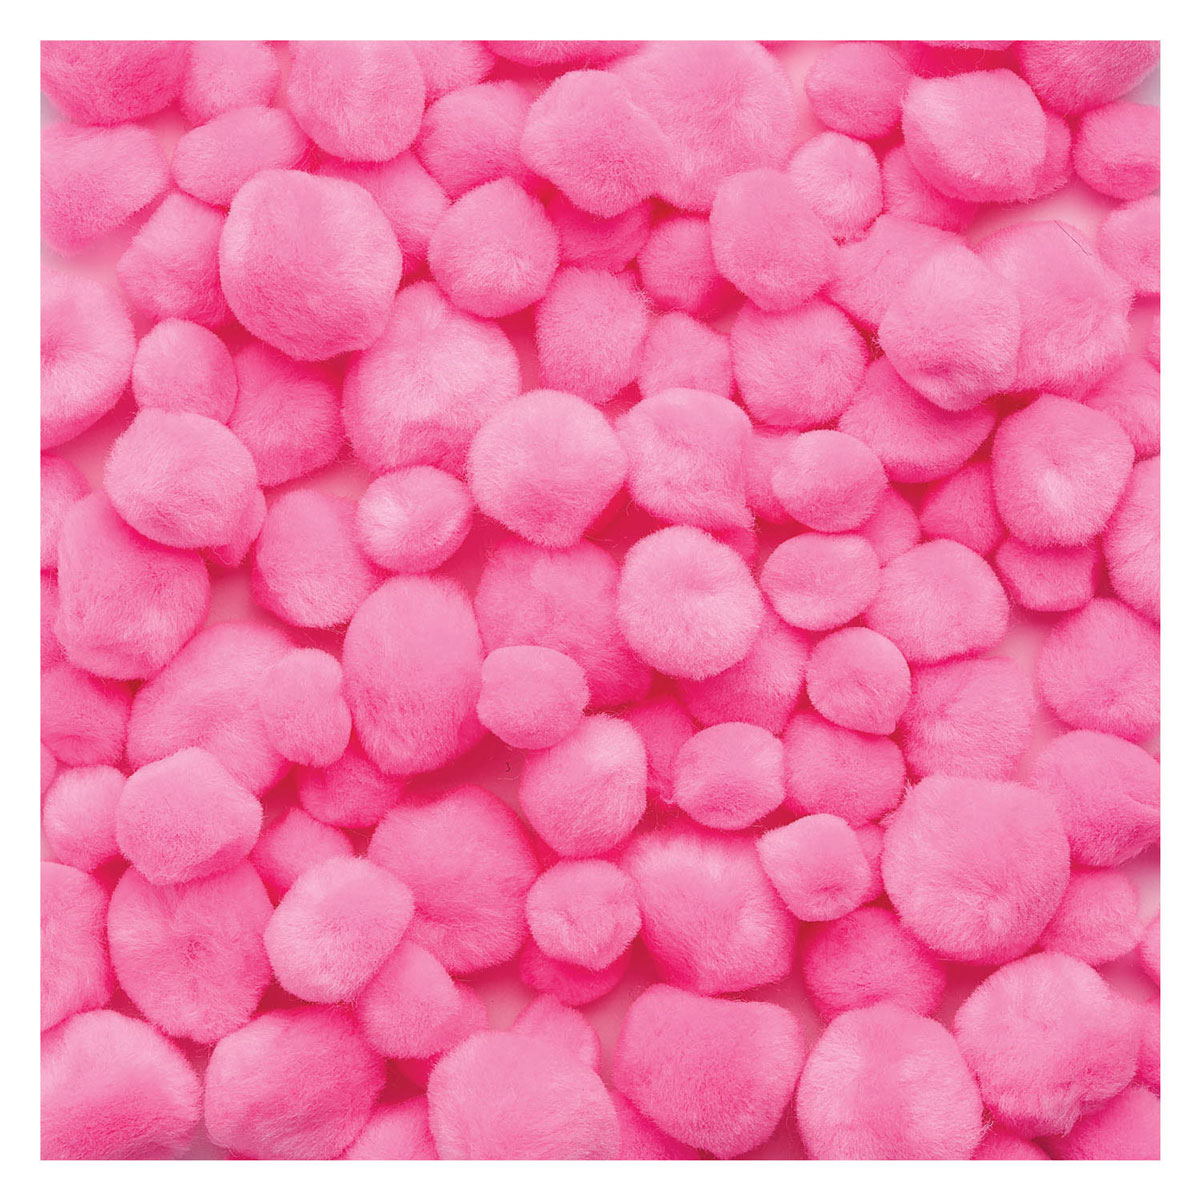 Colorationen - Pom Poms Pink, 100 Stück.